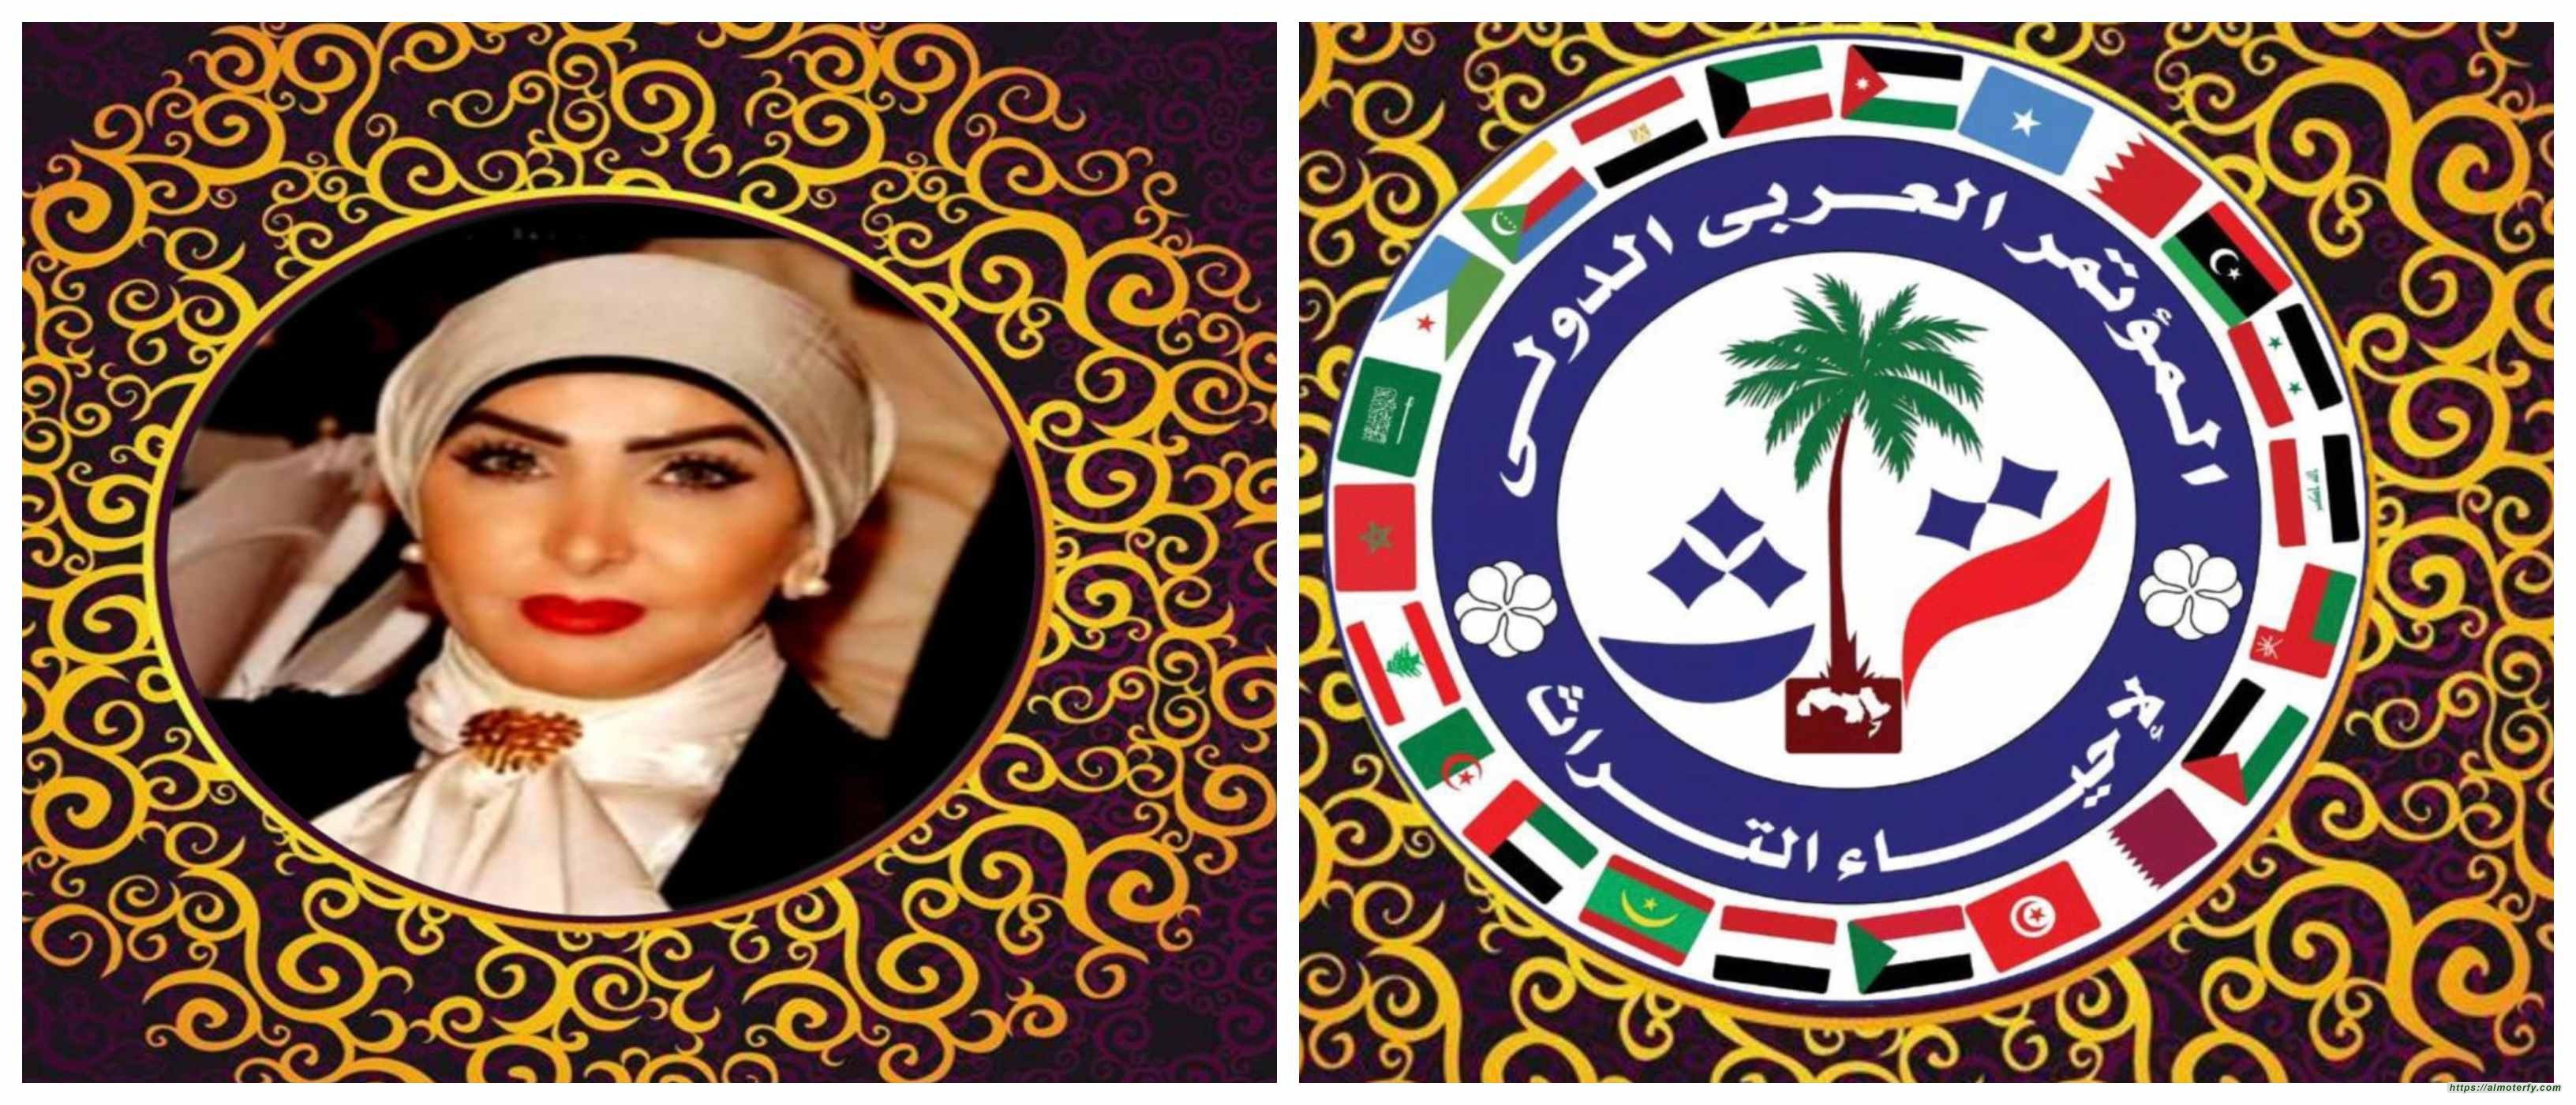 مبادرة كويتية لاقامة مؤتمر عربي دولي لاحياء التراث